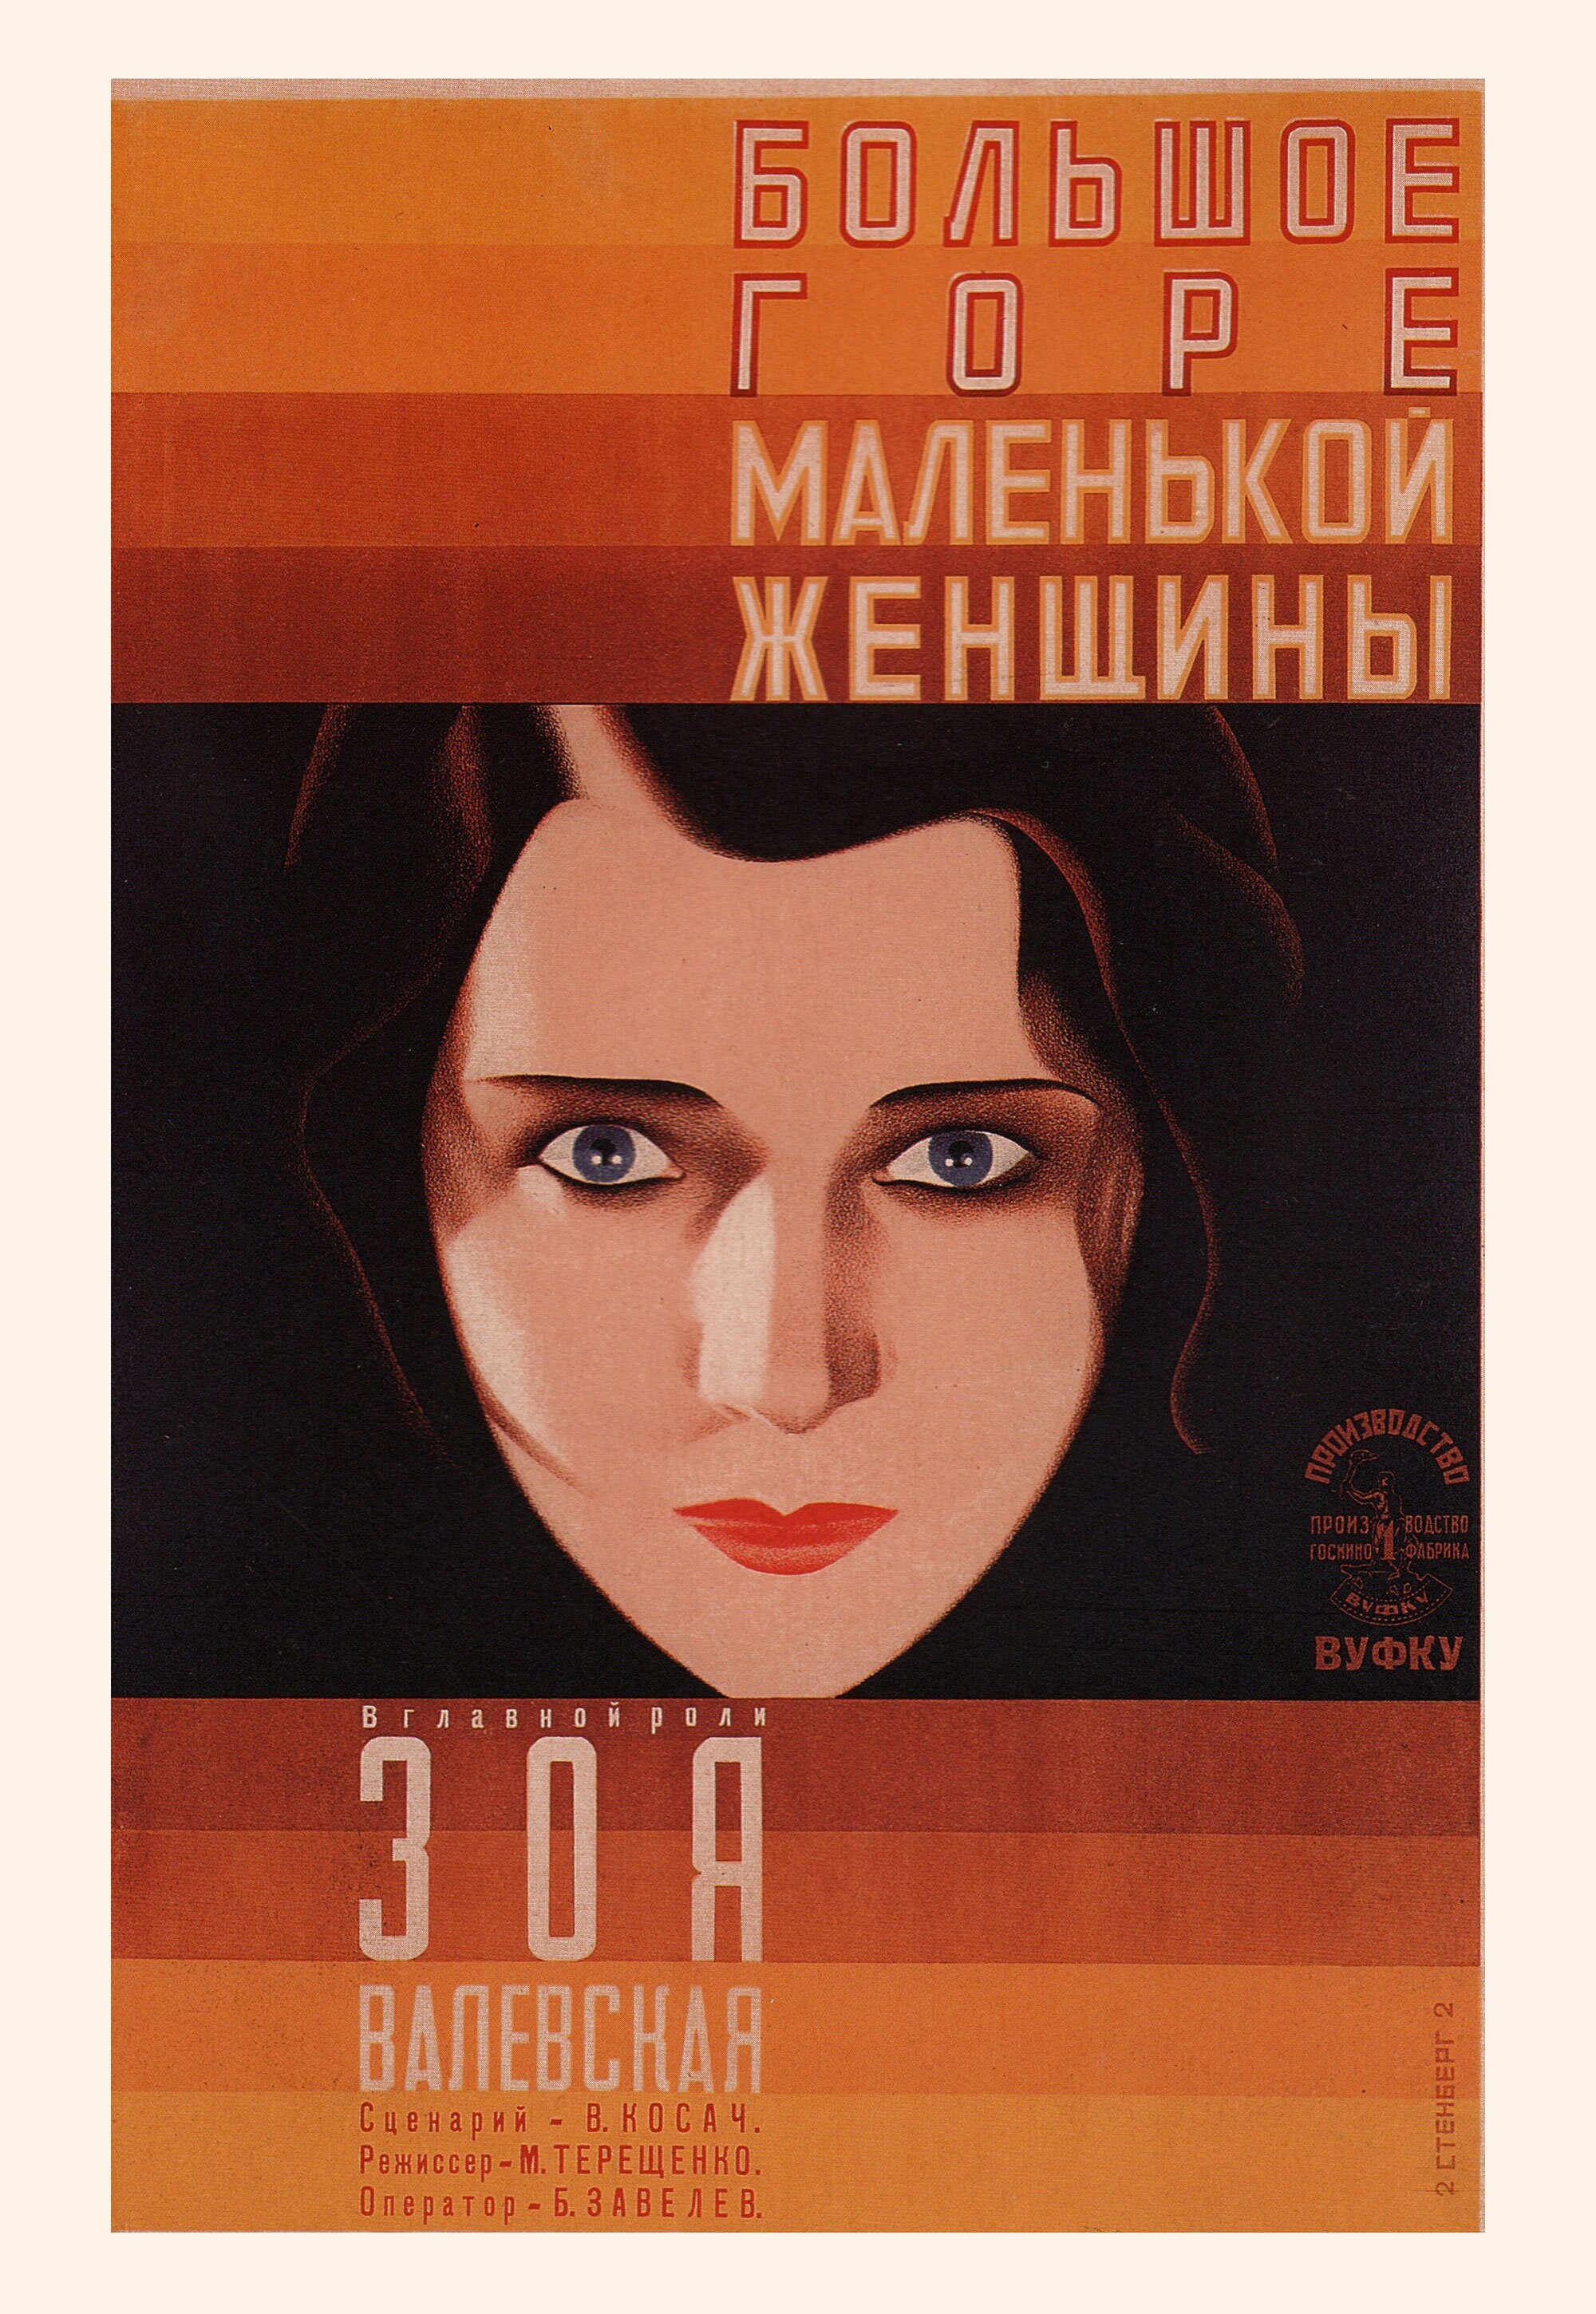 Большое горе маленькой женщины, 1929 год, режиссёр Марк Терещенко, плакат к фильму, авторы Владимир и Георгий Стенберги (авангардное советское искусство, 1920-е)